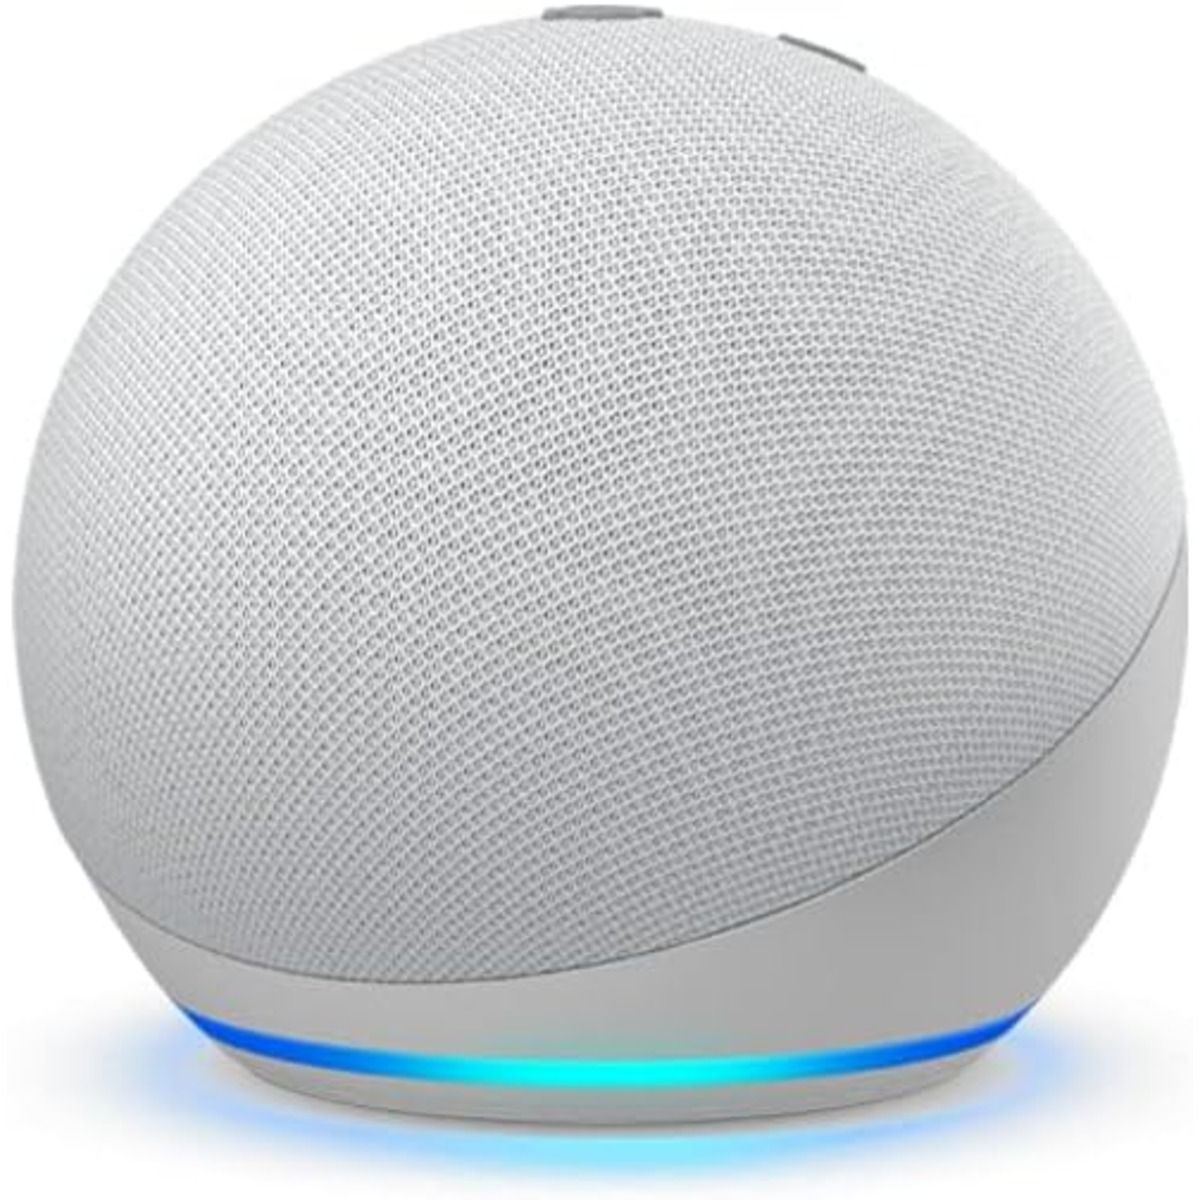 O alto-falante inteligente Amazon Echo Dot (4ª geração) contra um fundo branco